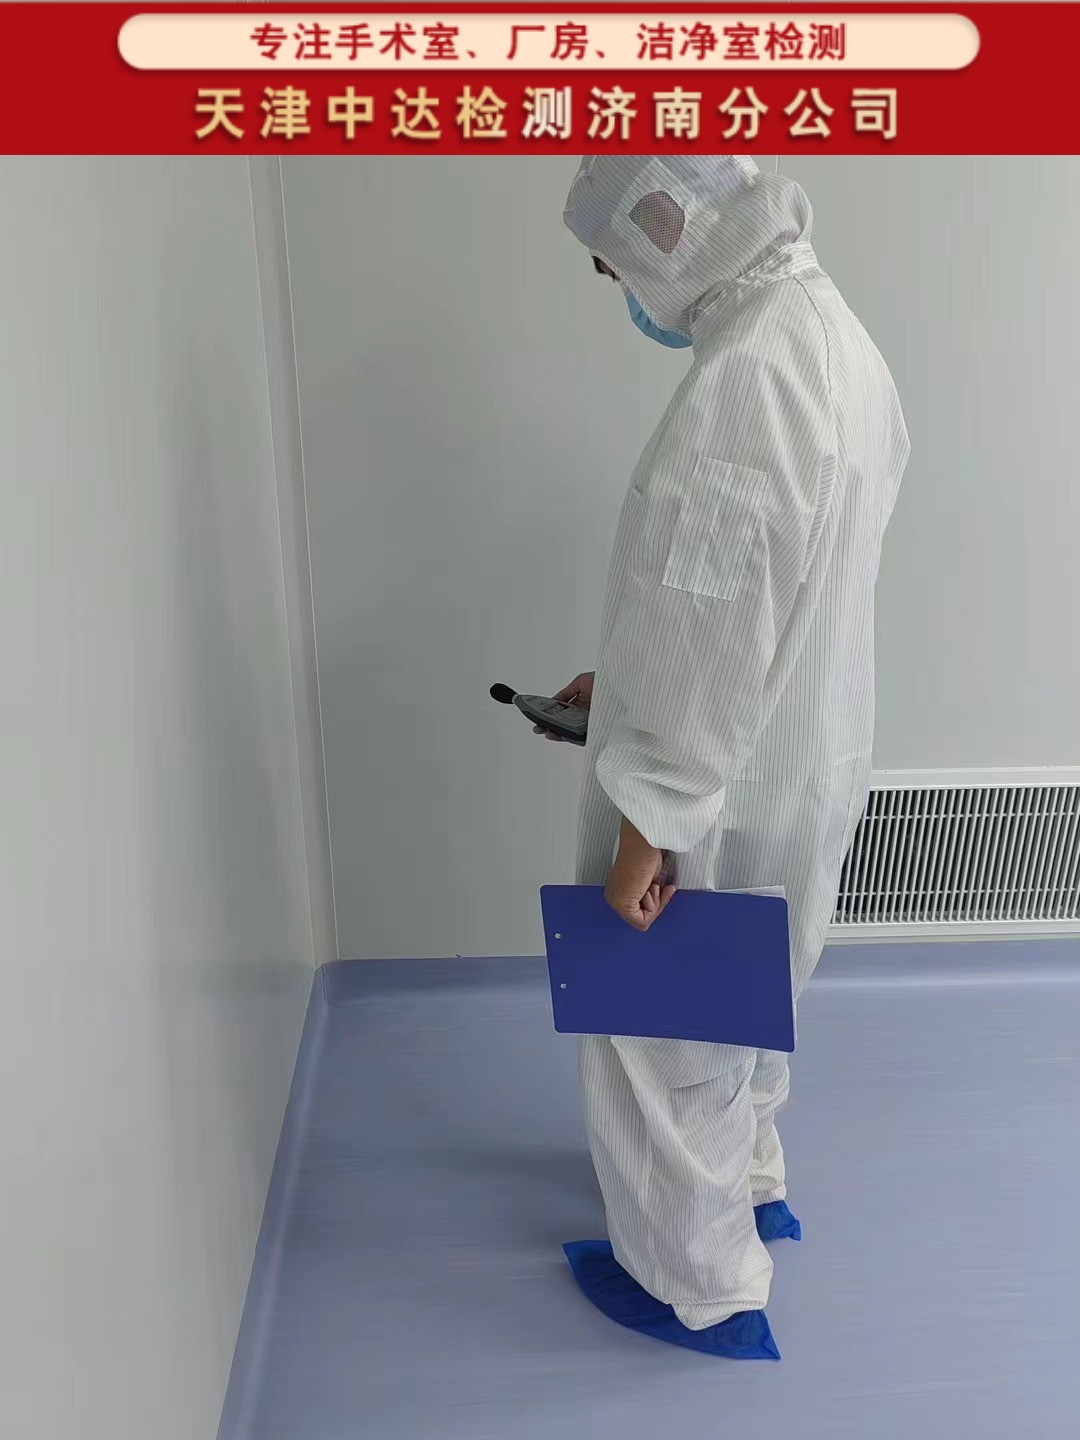 青岛平度市千级手术室洁净度级别检测第三方-天津中达检测济南分公司